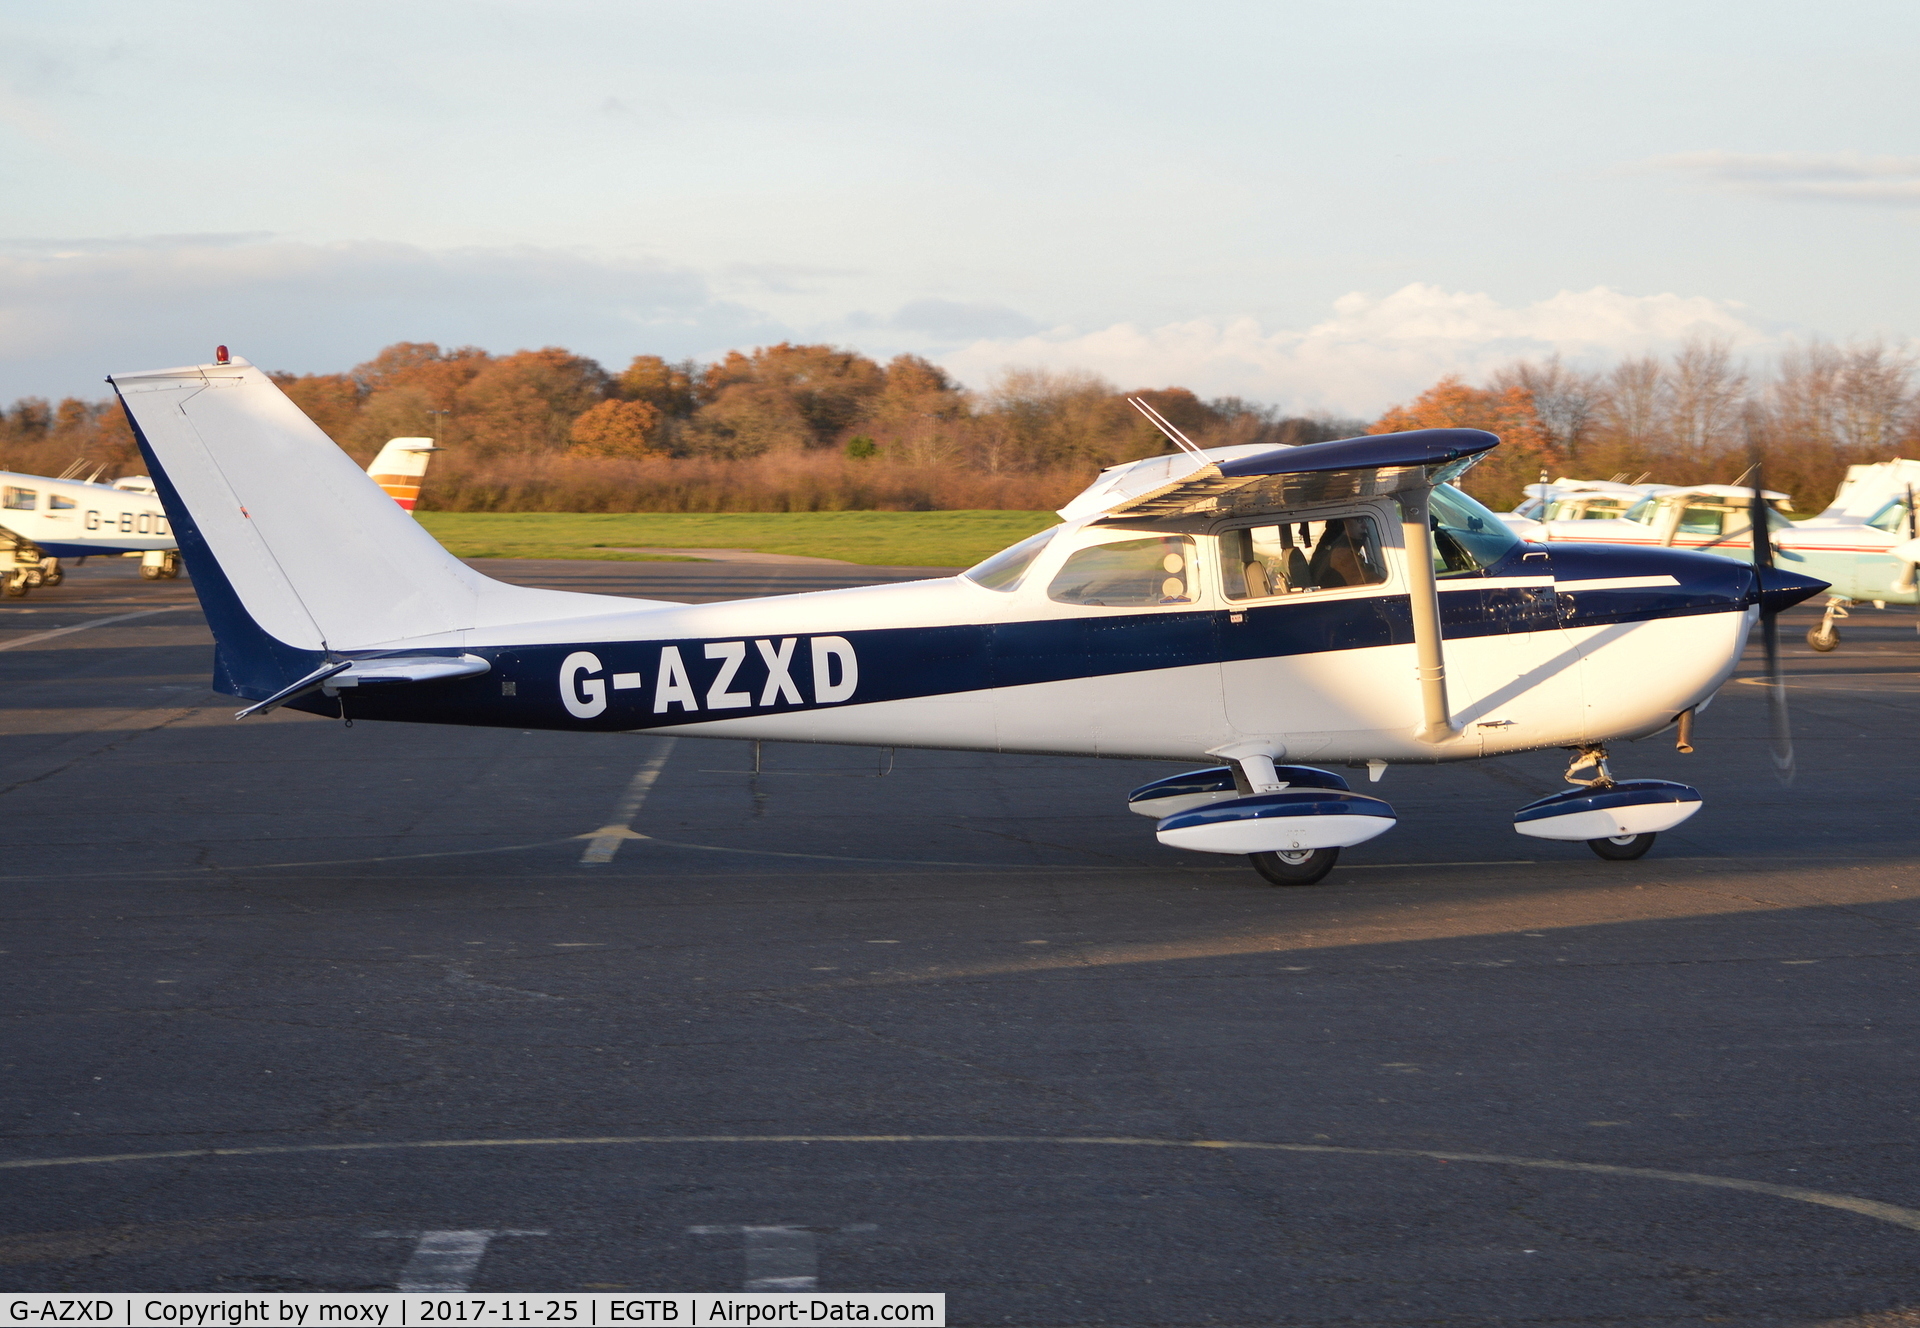 G-AZXD, 1972 Reims F172L Skyhawk C/N 0878, Reims Cessna F172L Skyhawk at Wycombe Air Park.